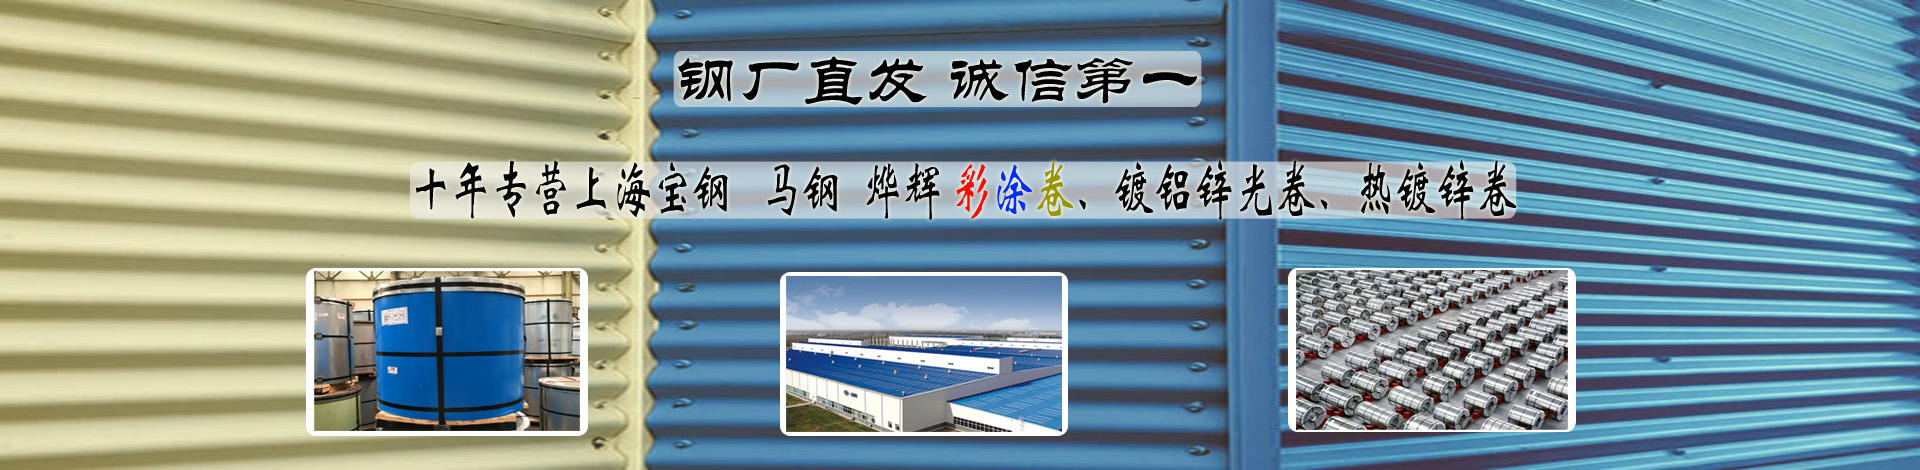 台州宝钢彩钢板公司